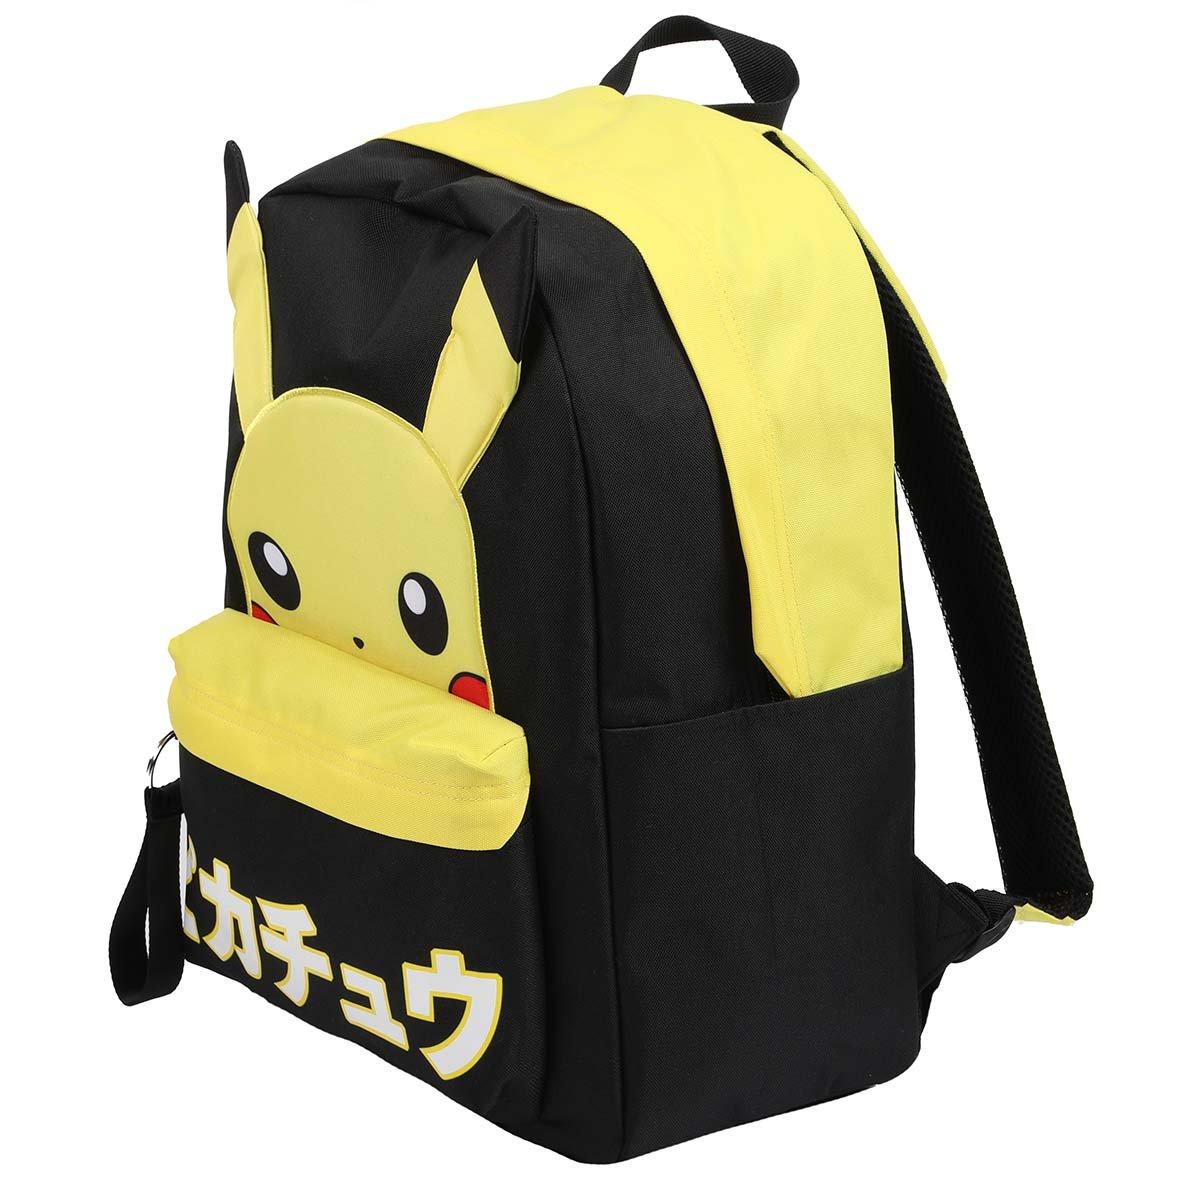 Pokemon - Eevee Hooded Kids Backpack